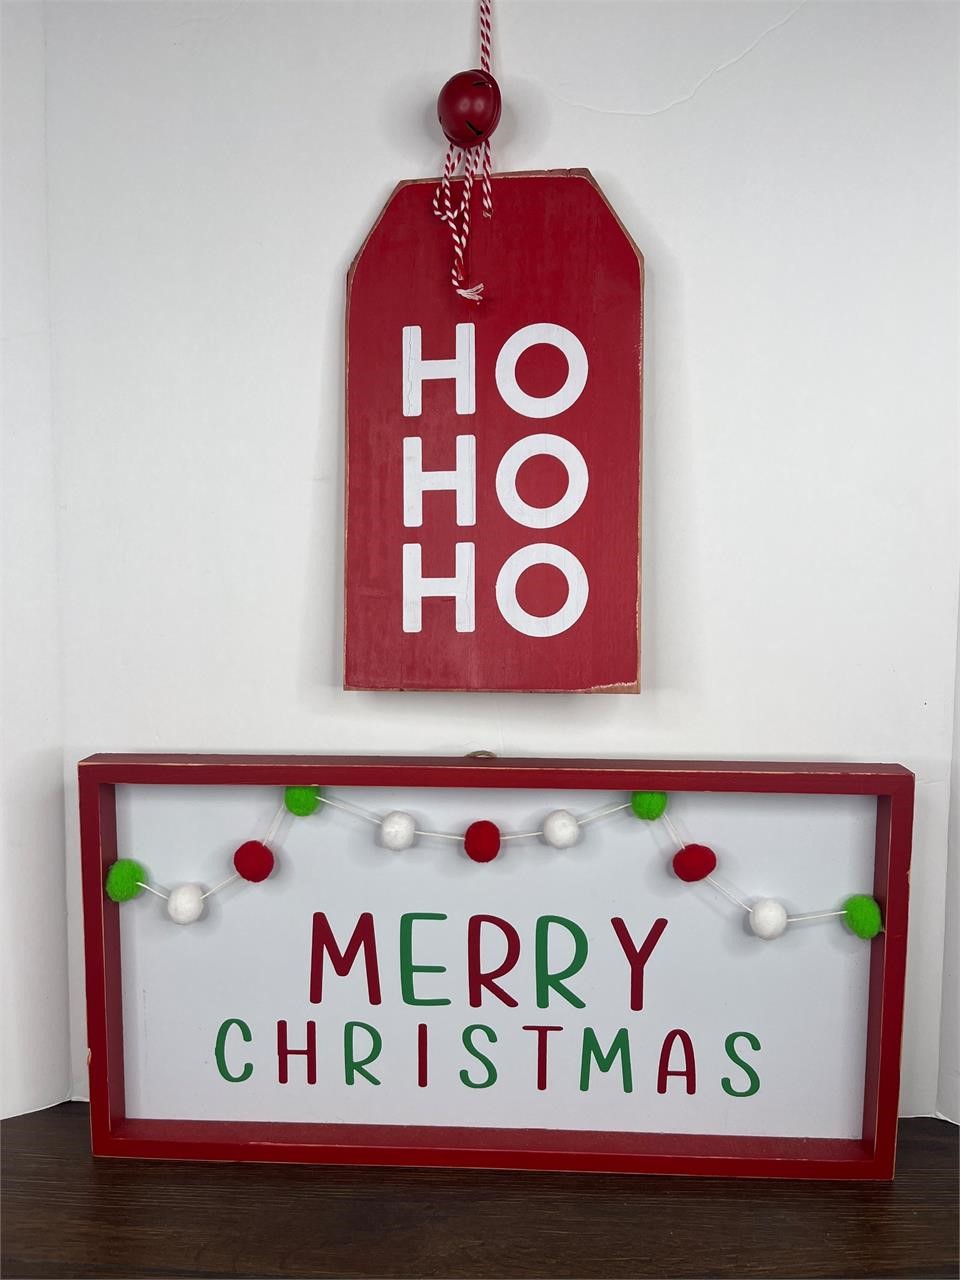 Merry Christmas & Ho Ho Ho Wood Signs